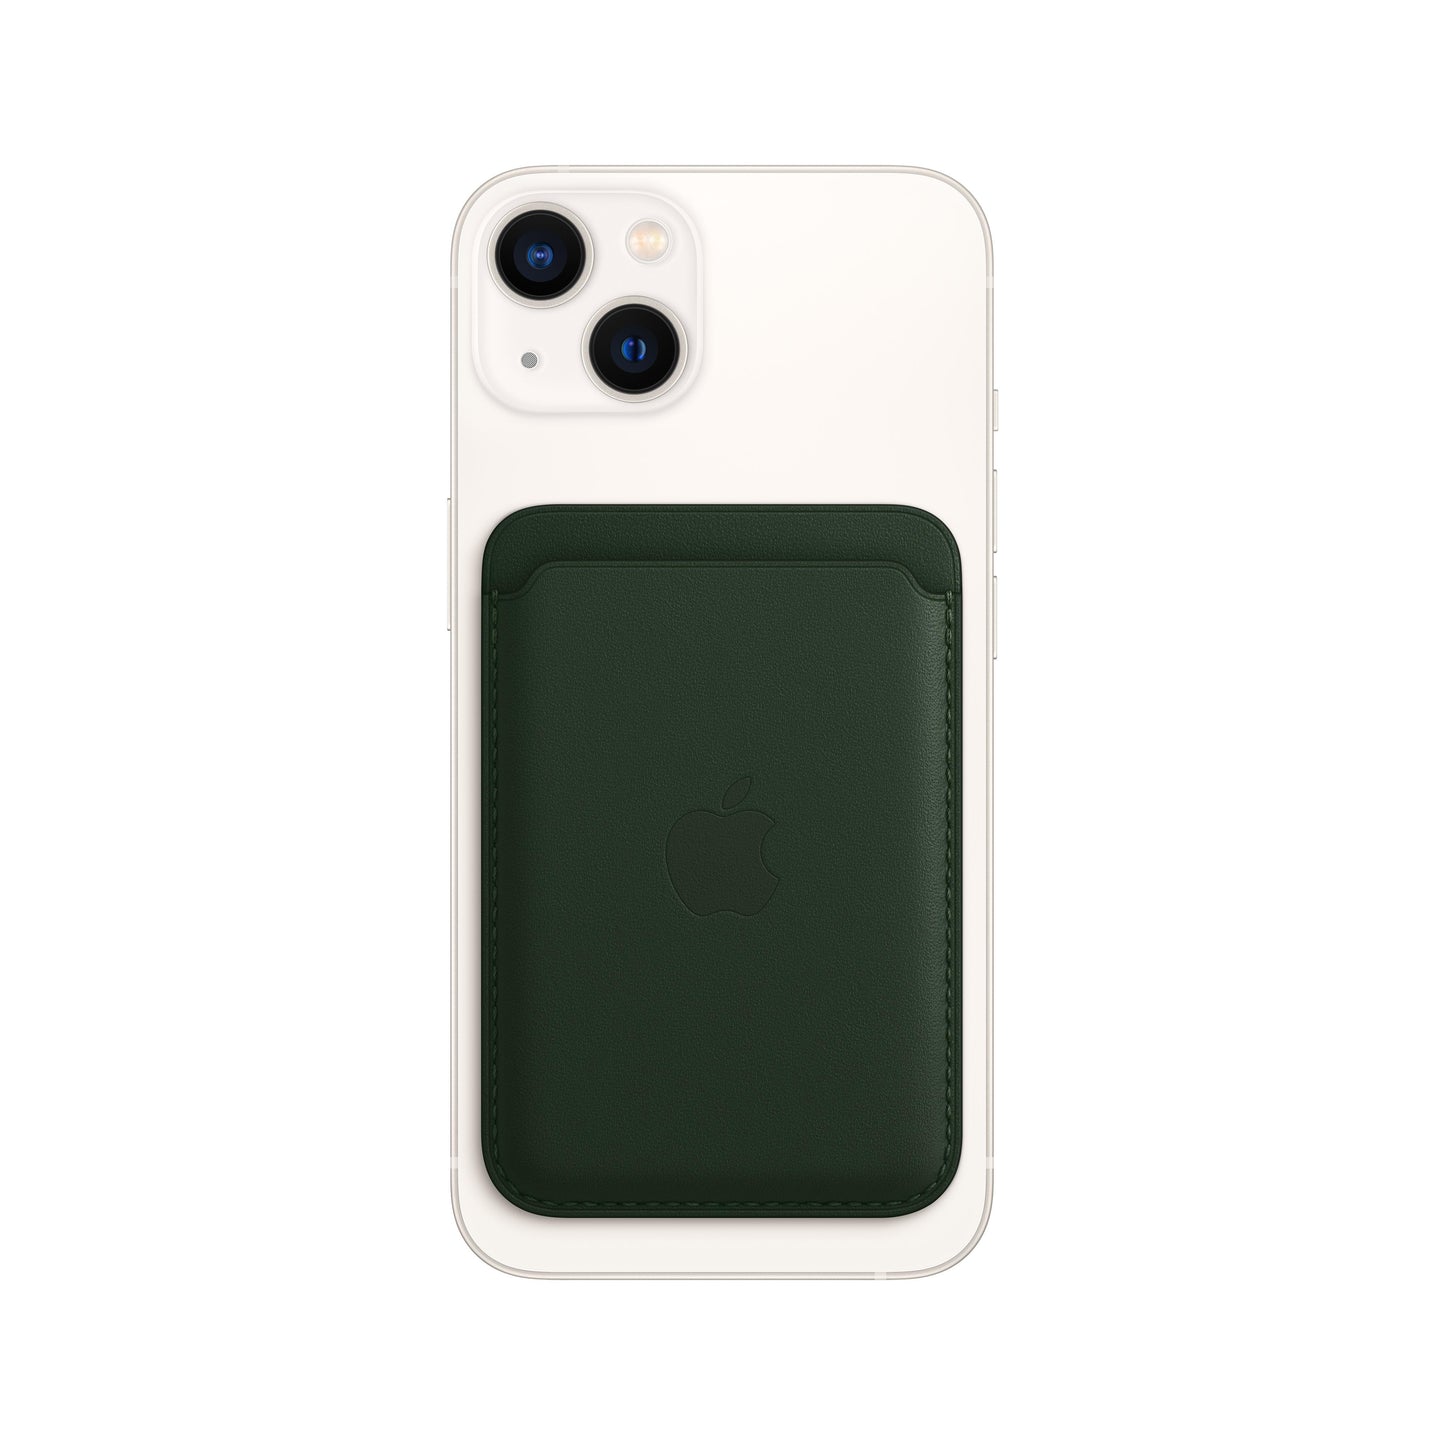 Cartera de piel con MagSafe para el iPhone - Verde secuoya - Rossellimac